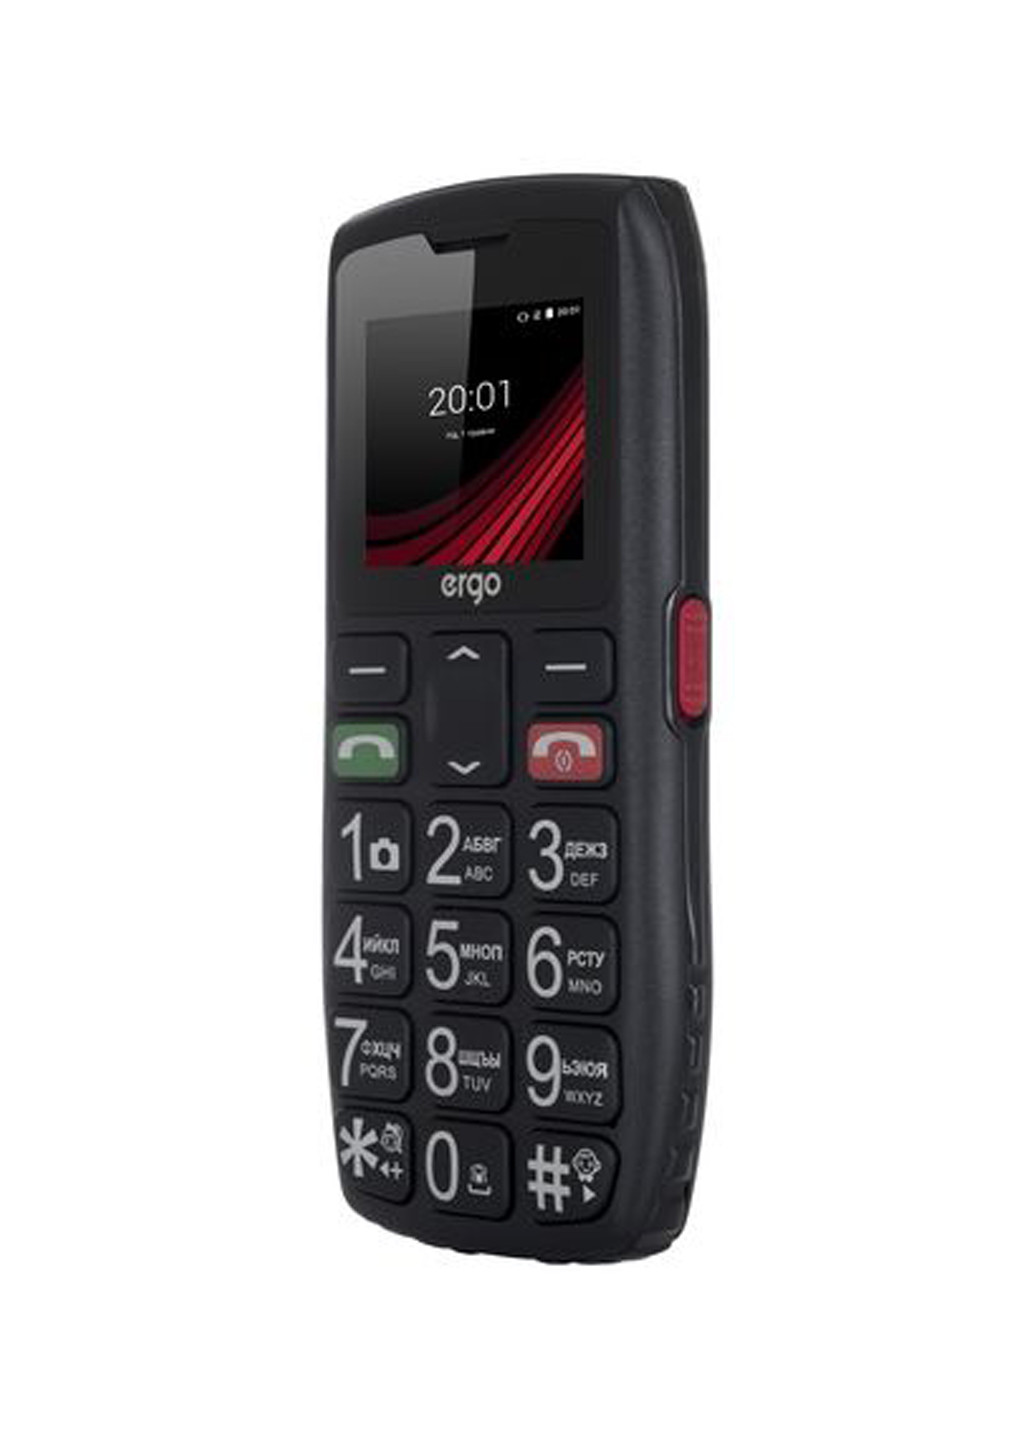 Мобильный телефон Ergo f184 respect black (132999701)